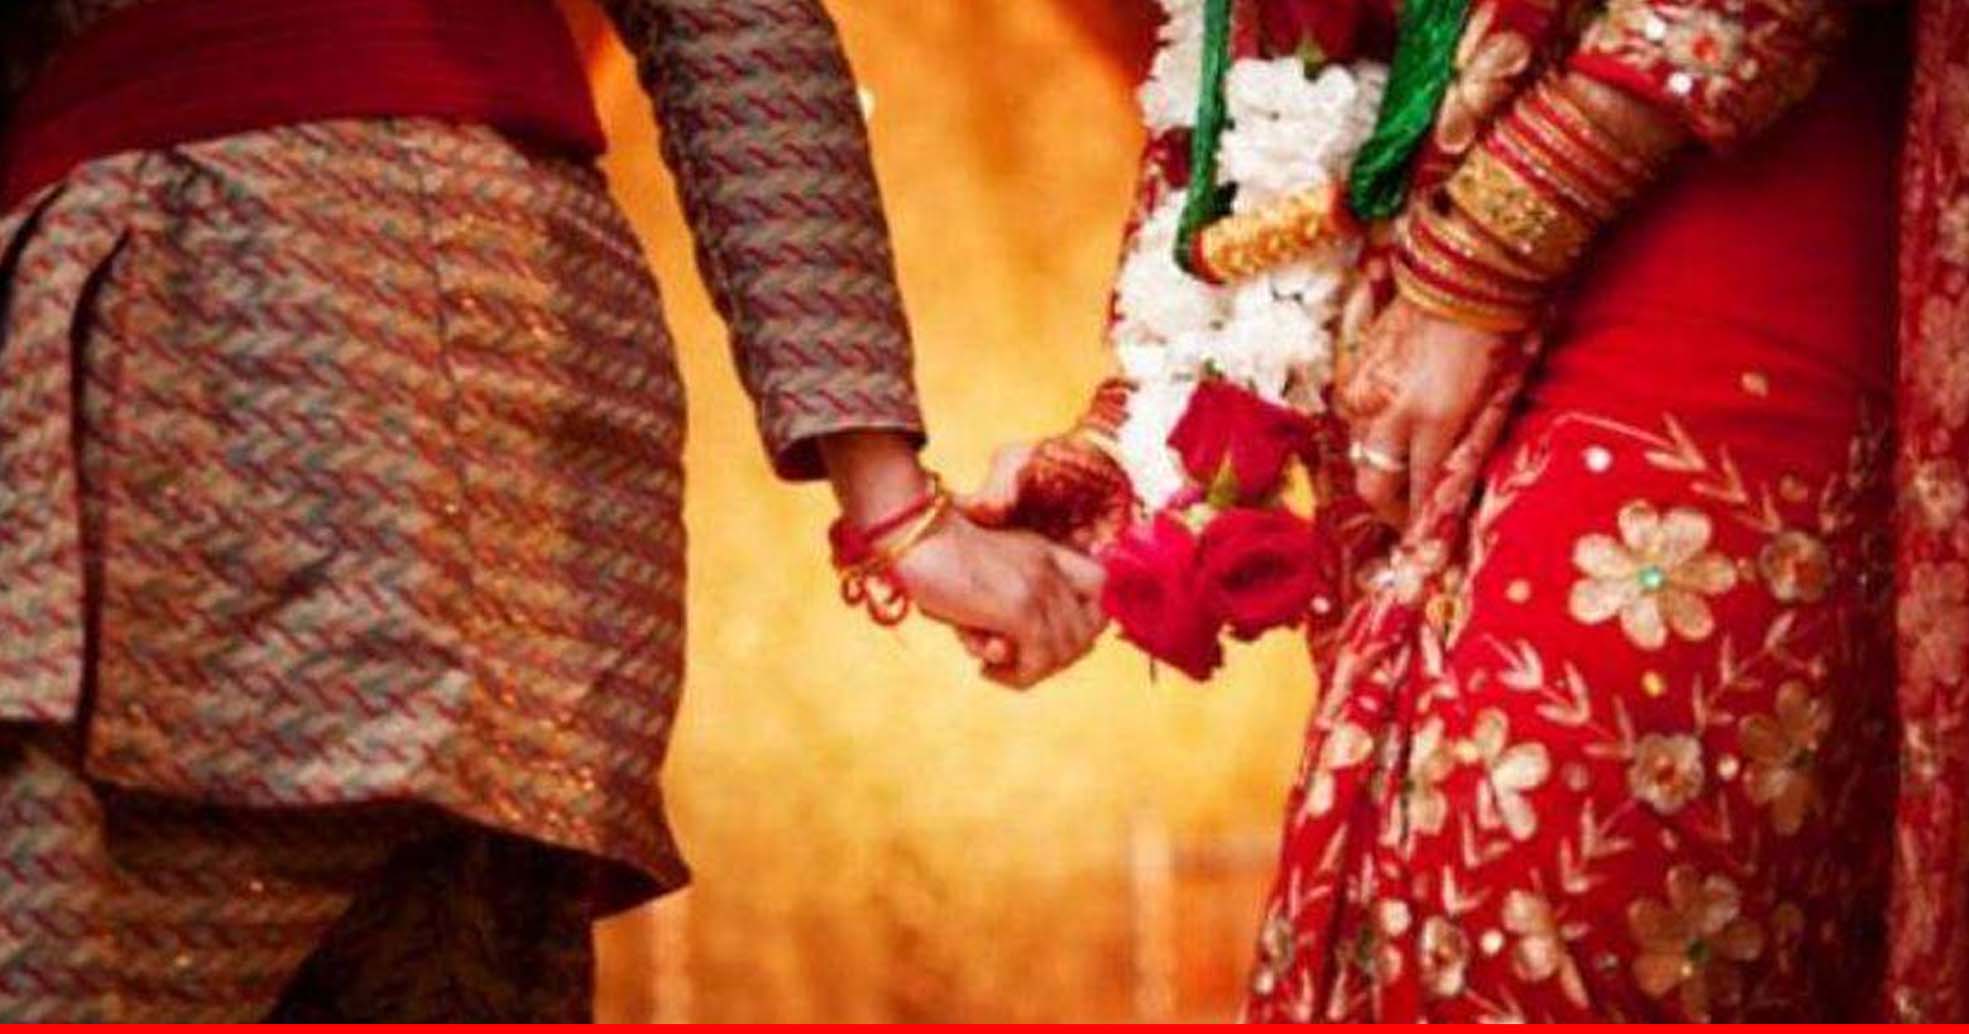 अक्षय तृतीया पर शादी हुई तो आंगनबाड़ी कार्यकर्ता और सुपरवाइजर की जाएगी नौकरी